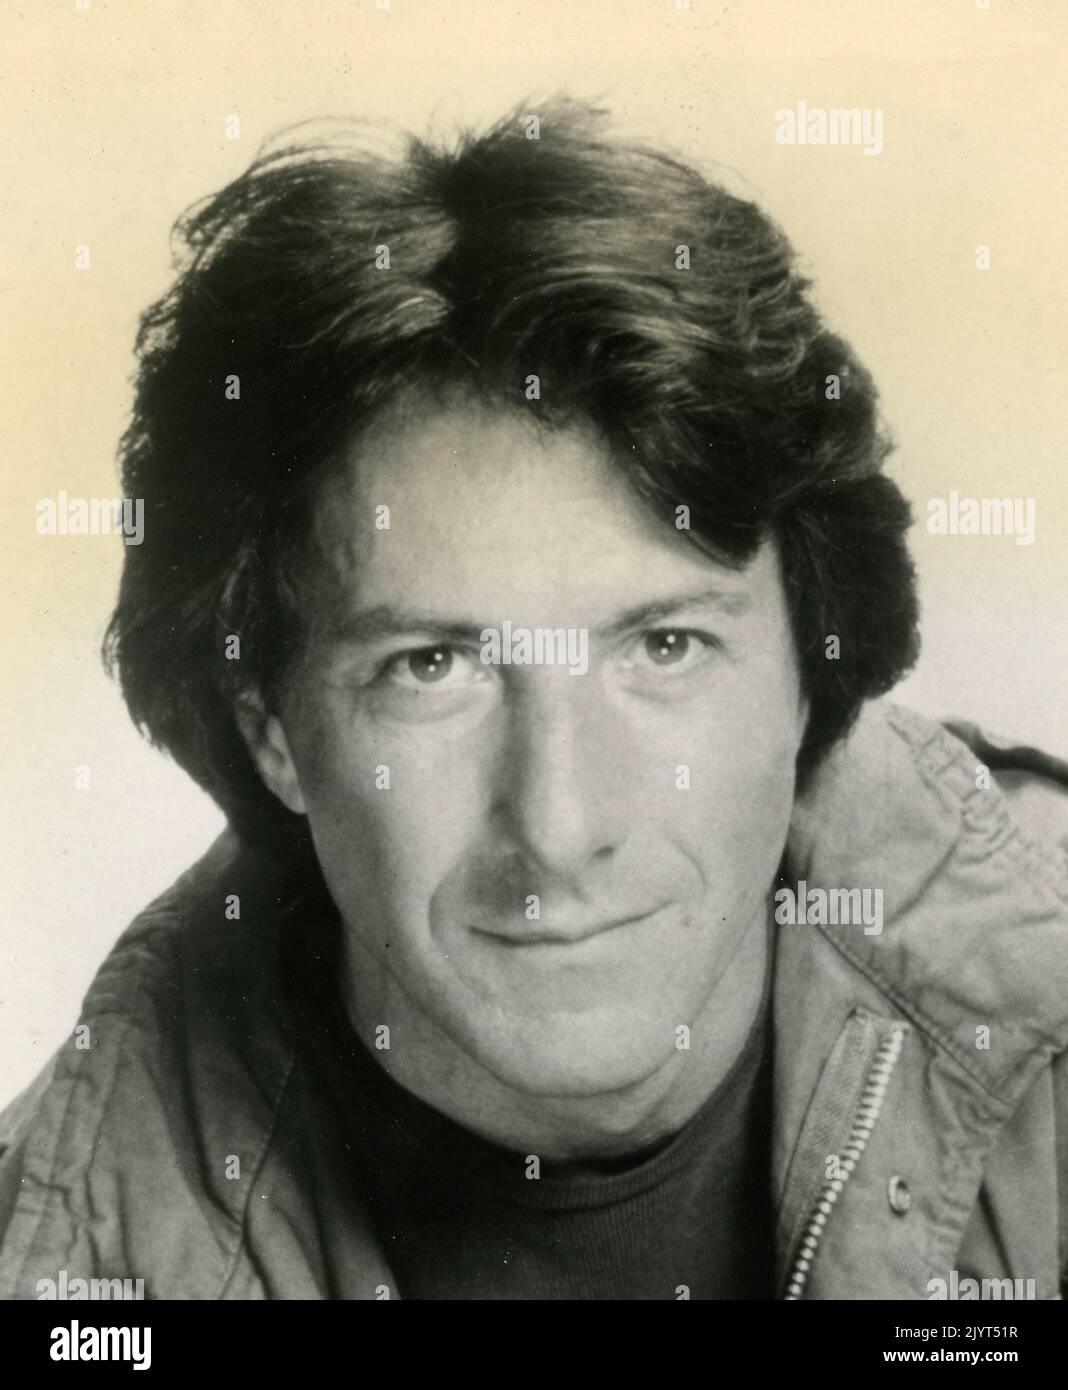 Attore americano Dustin Hoffman, USA 1980s Foto Stock